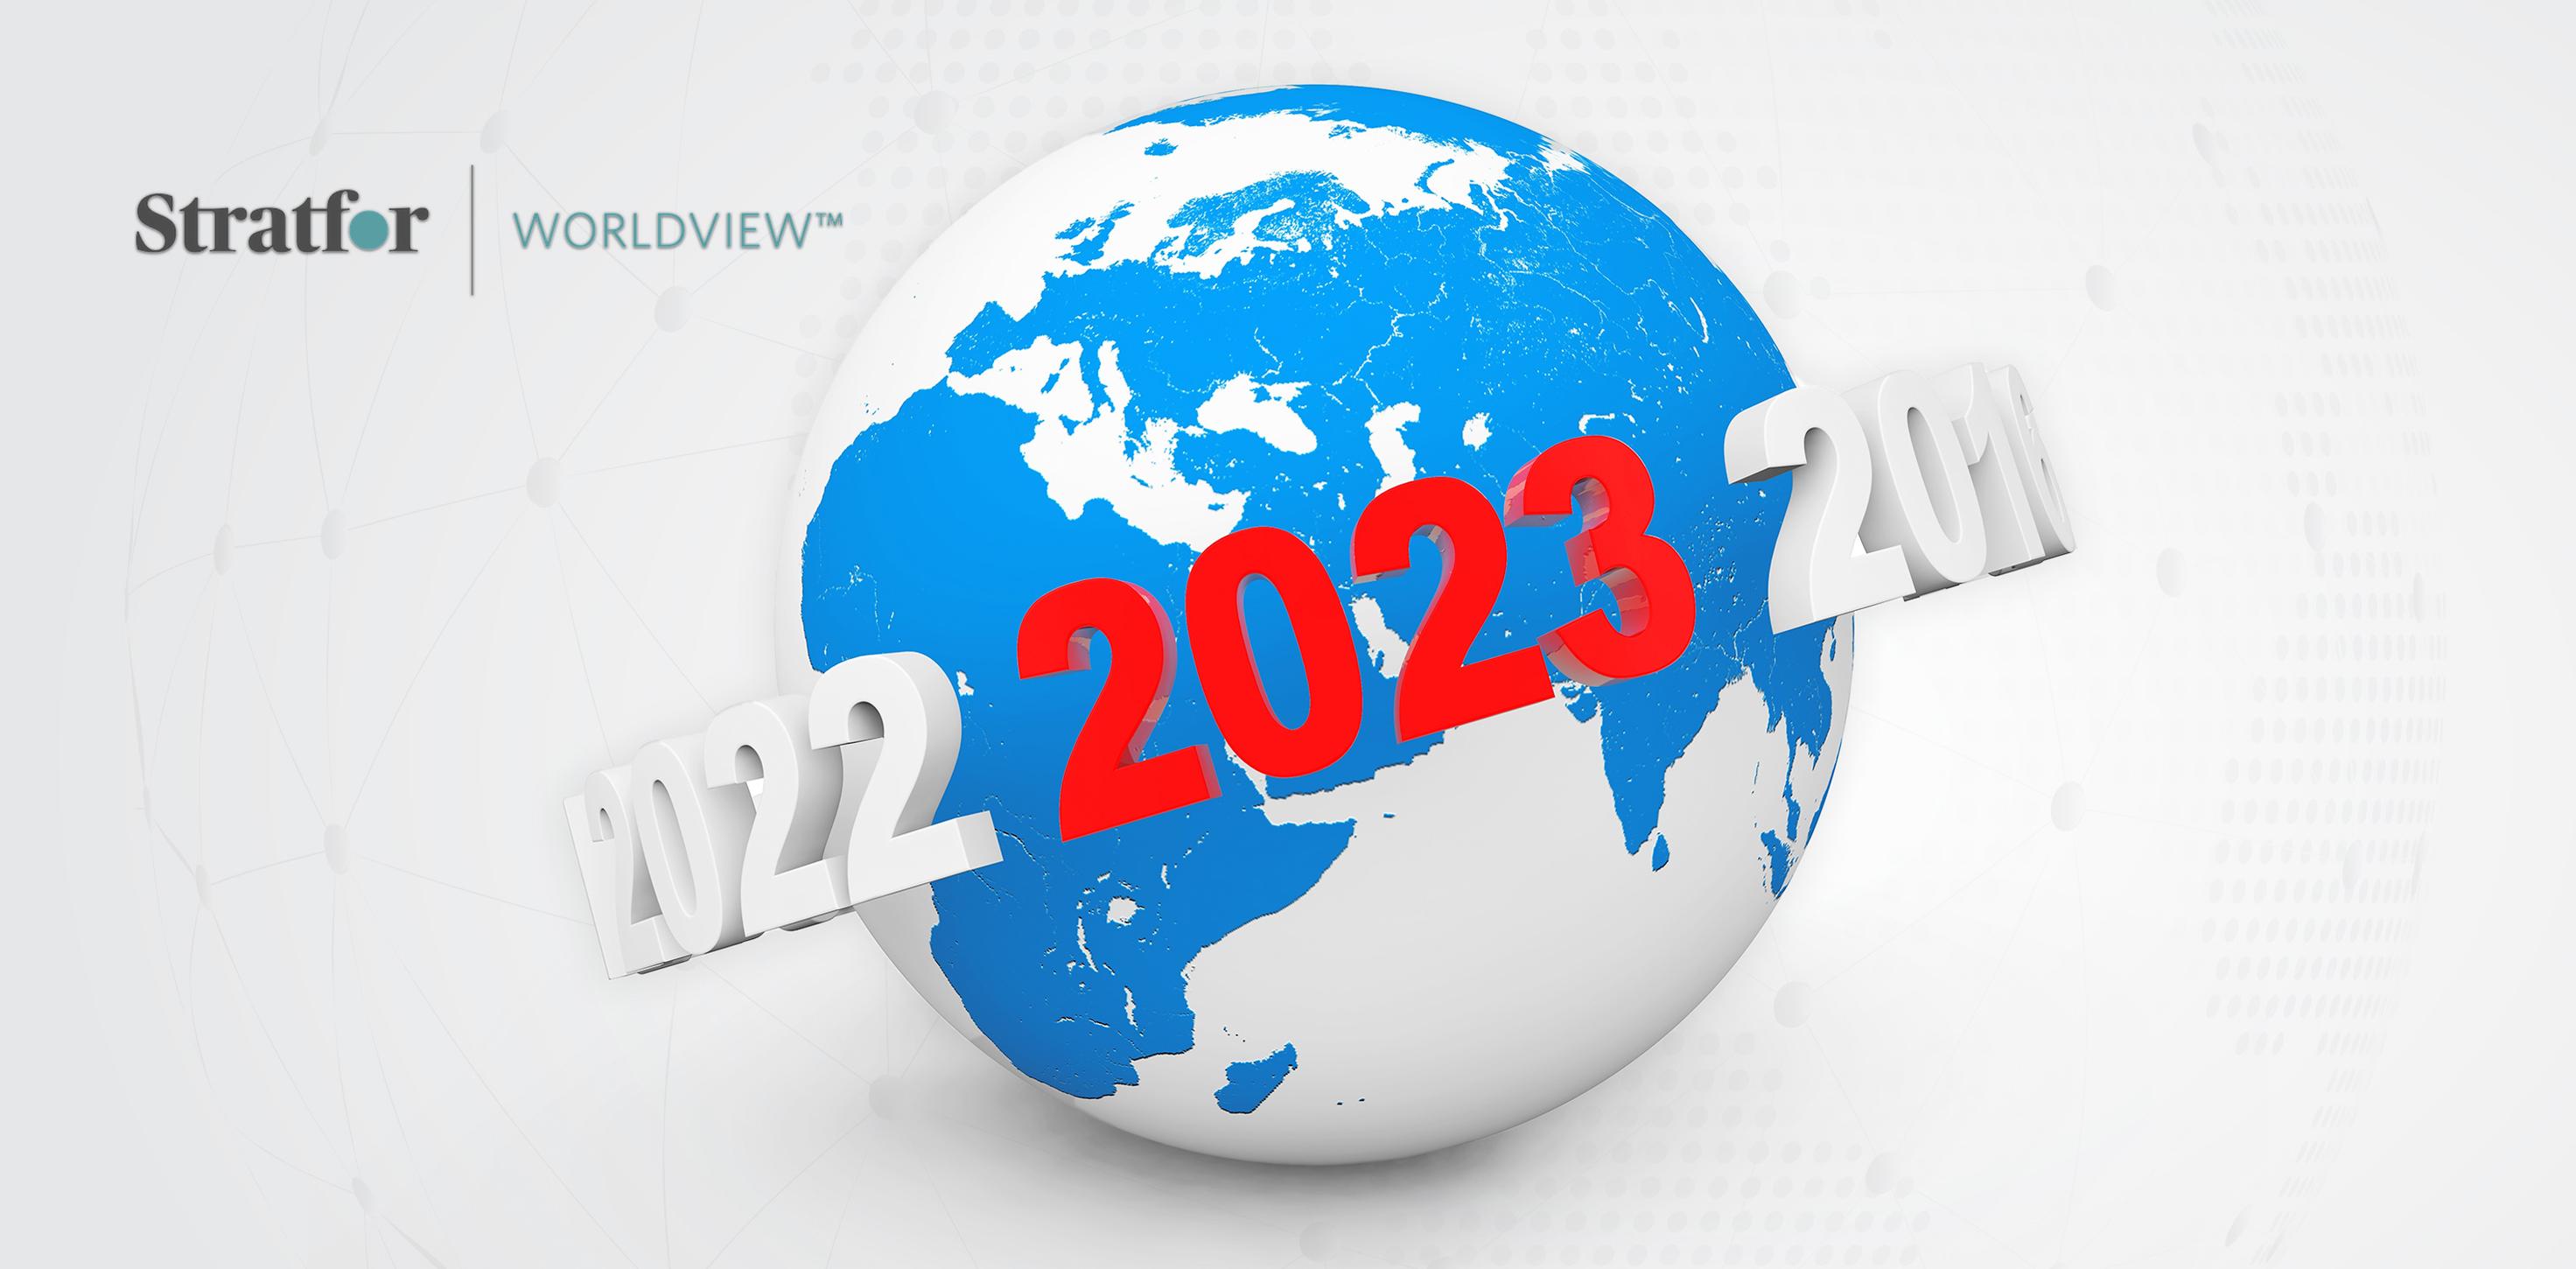 الاتجاهات المحتملة في أقاليم العالم خلال 2023